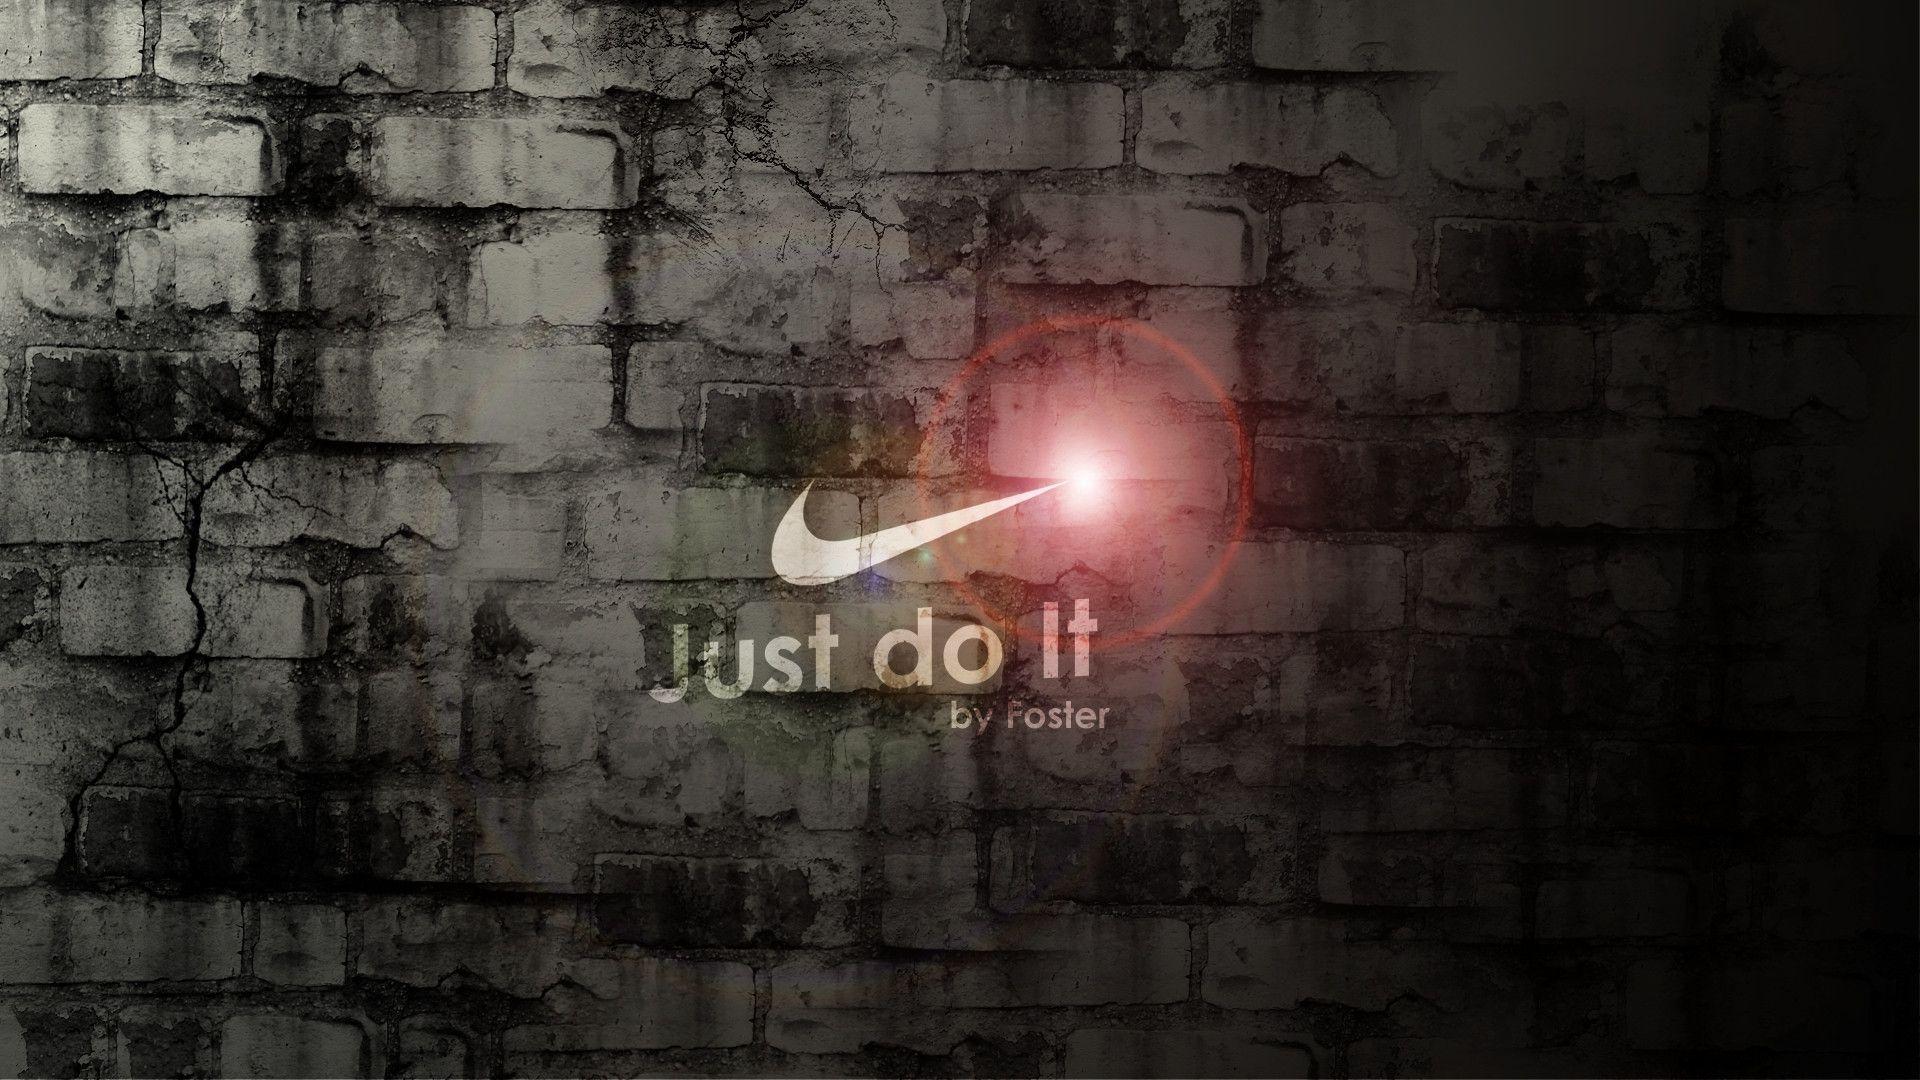 Wallpaper For > Nike Wallpaper Just Do It Soccer